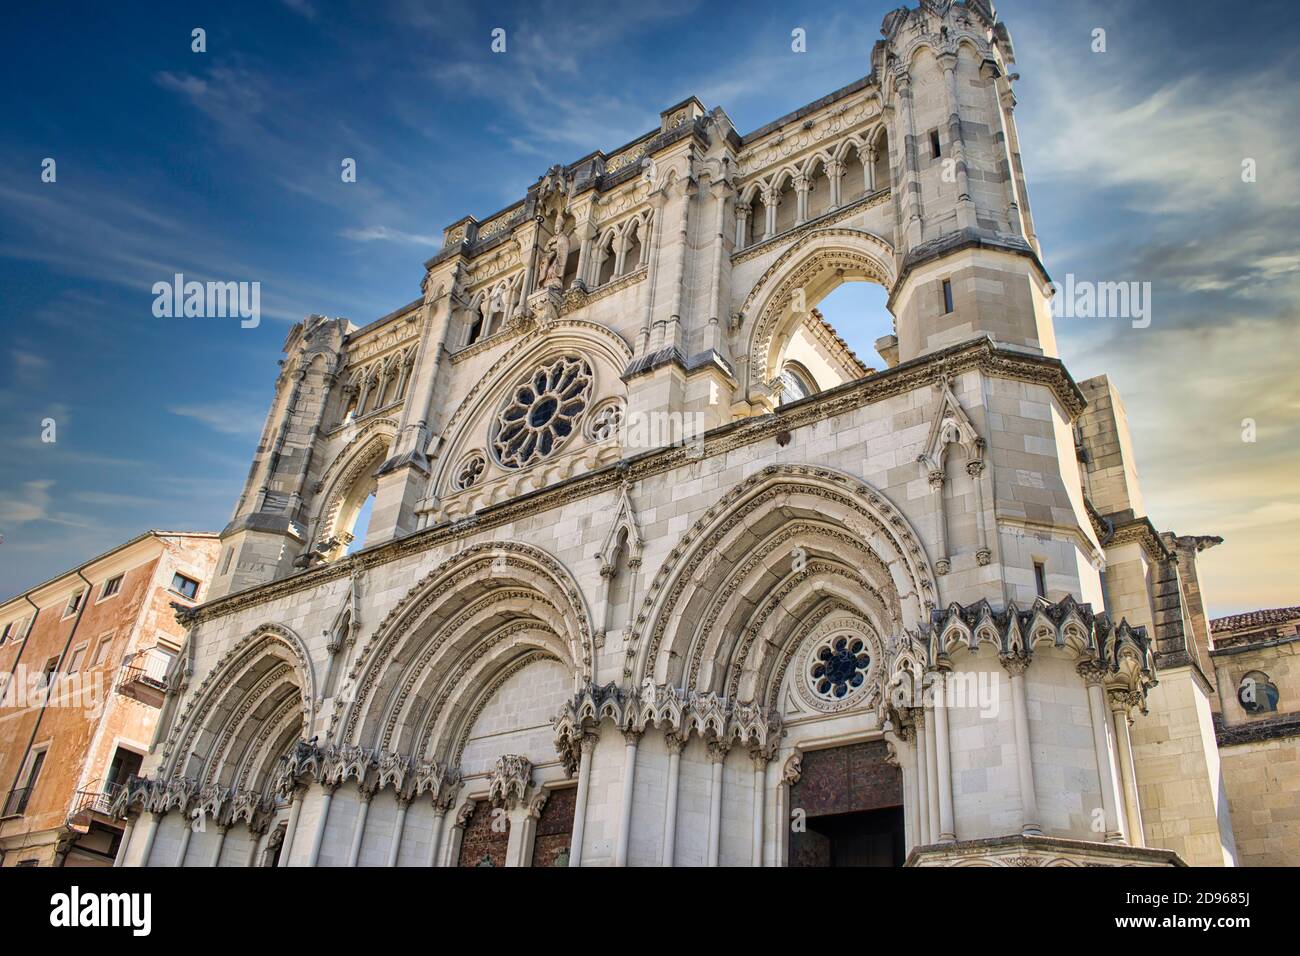 La belle cathédrale gothique de Cuenca, Espagne Banque D'Images